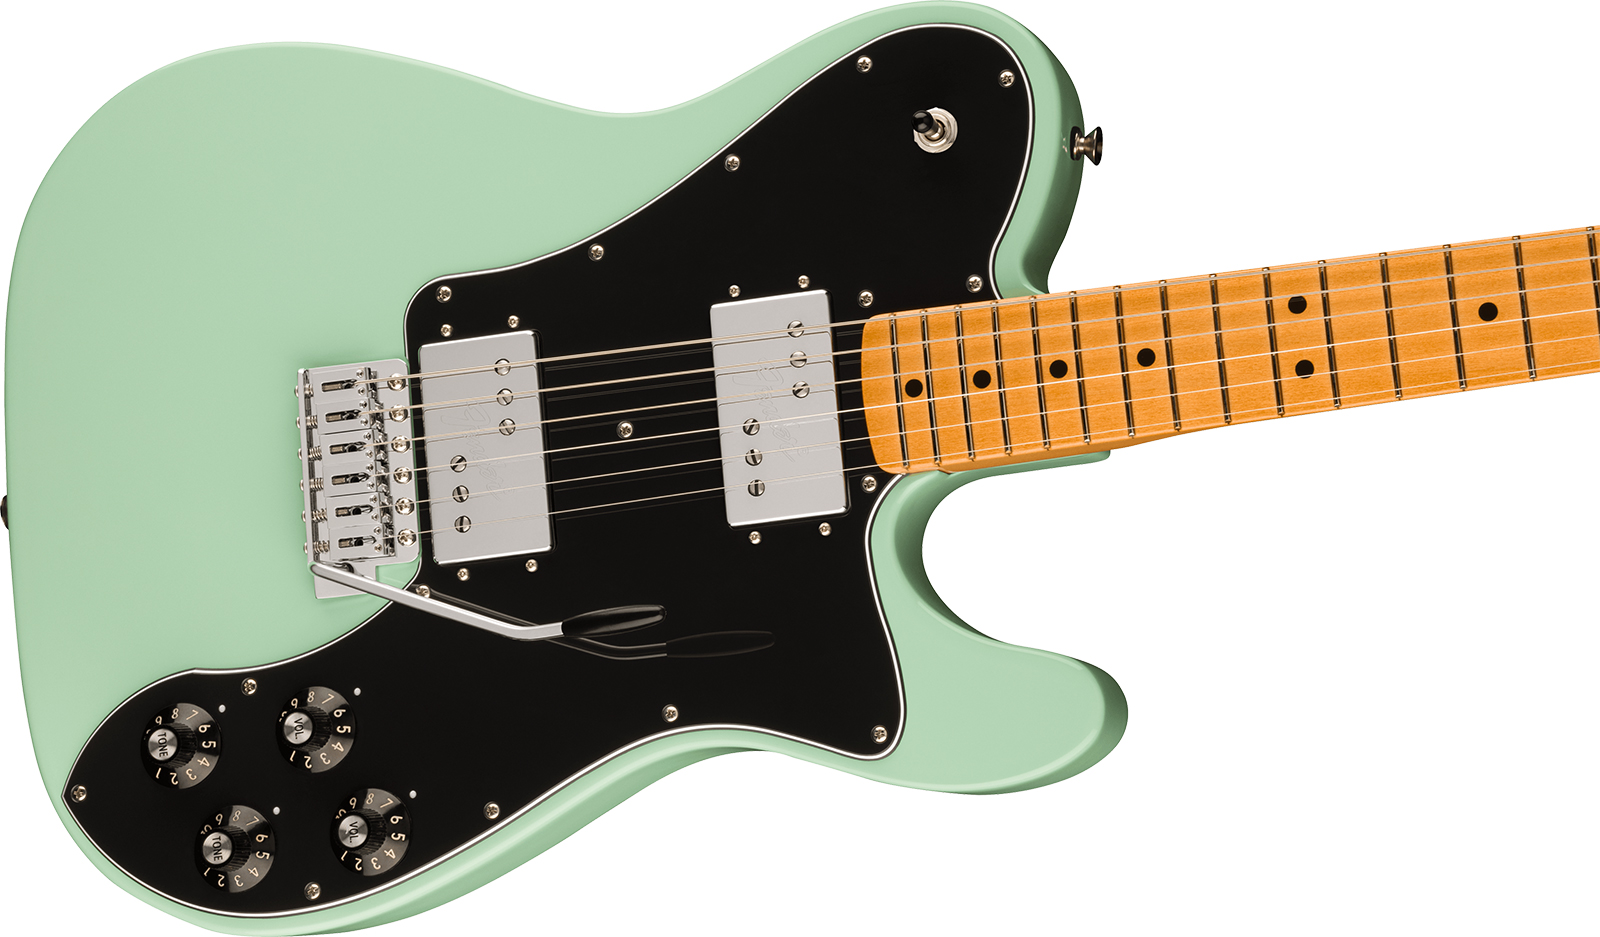 Fender Tele 70s Deluxe Tremolo Vintera 2 Mex 2h Trem Mn - Surf Green - Guitarra eléctrica con forma de tel - Variation 2